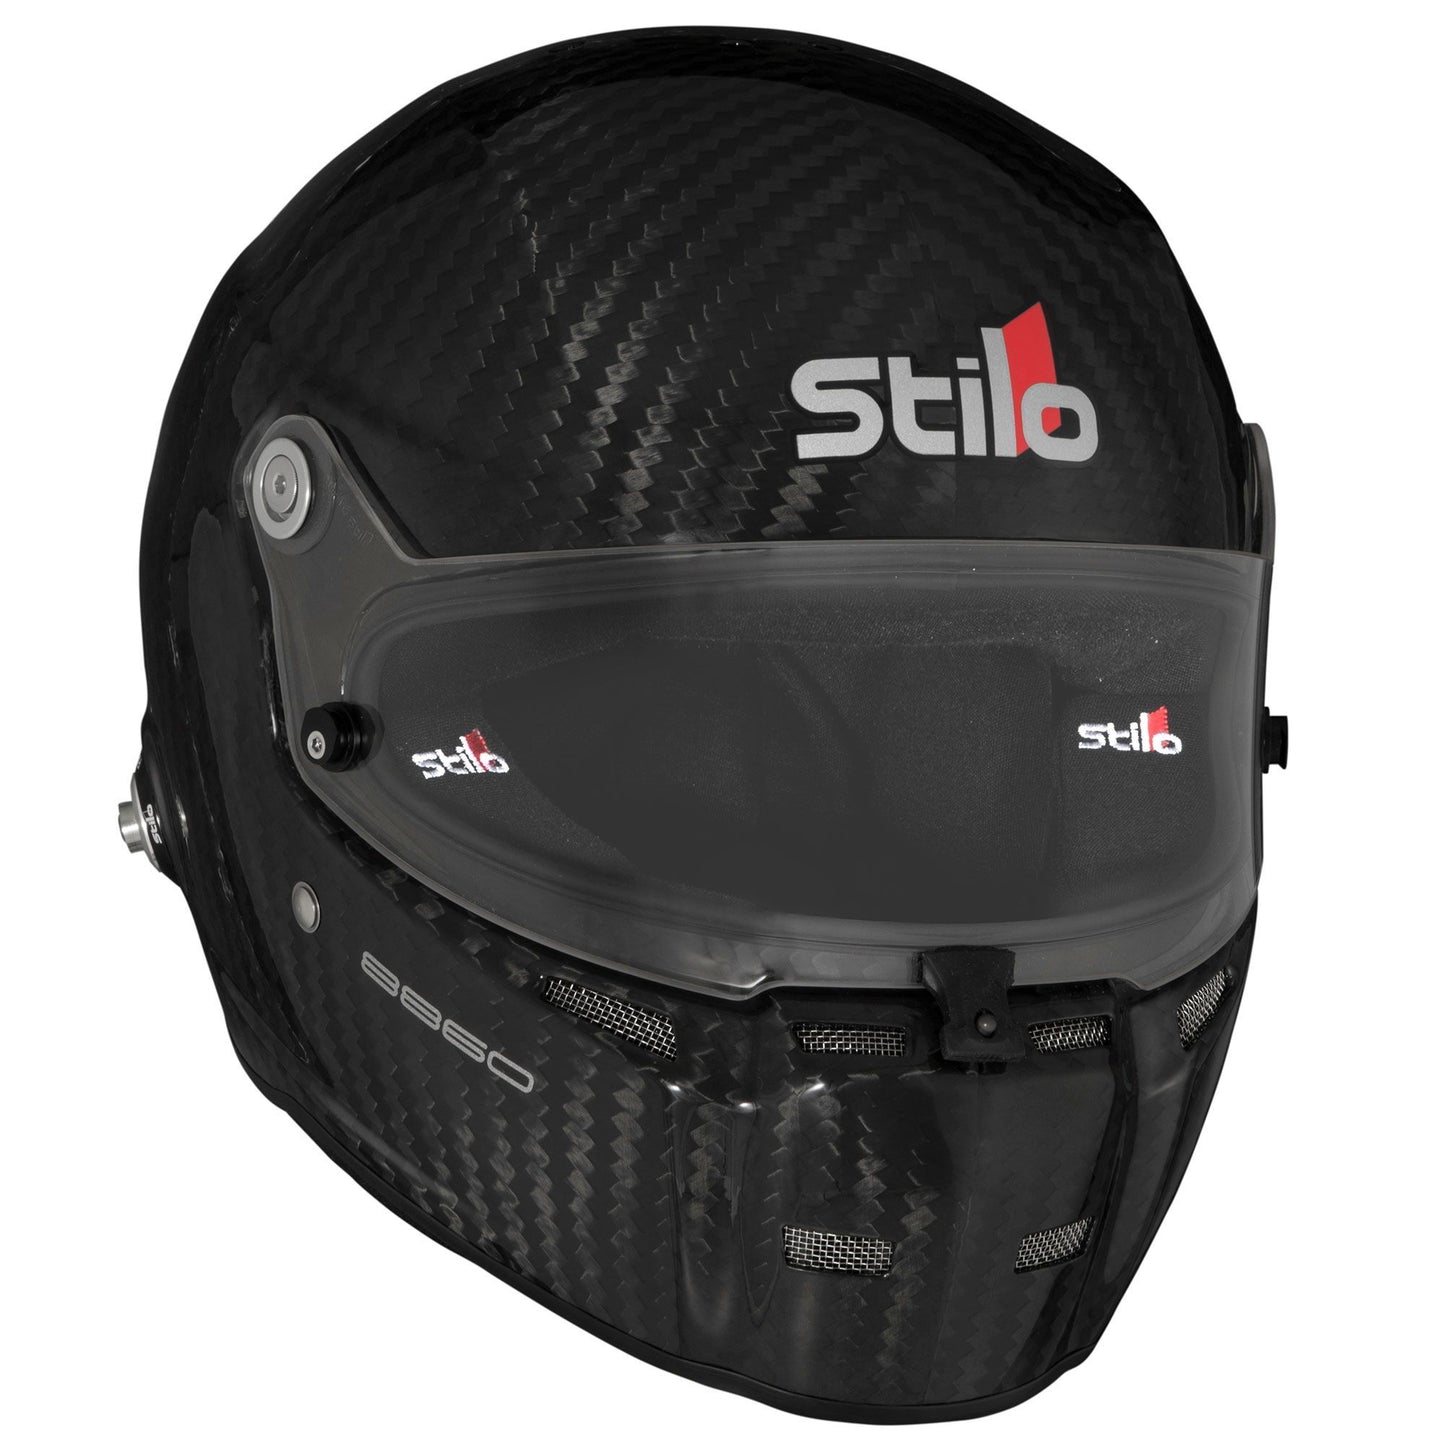 Stilo ST5FN FN Professional 8860 helmet